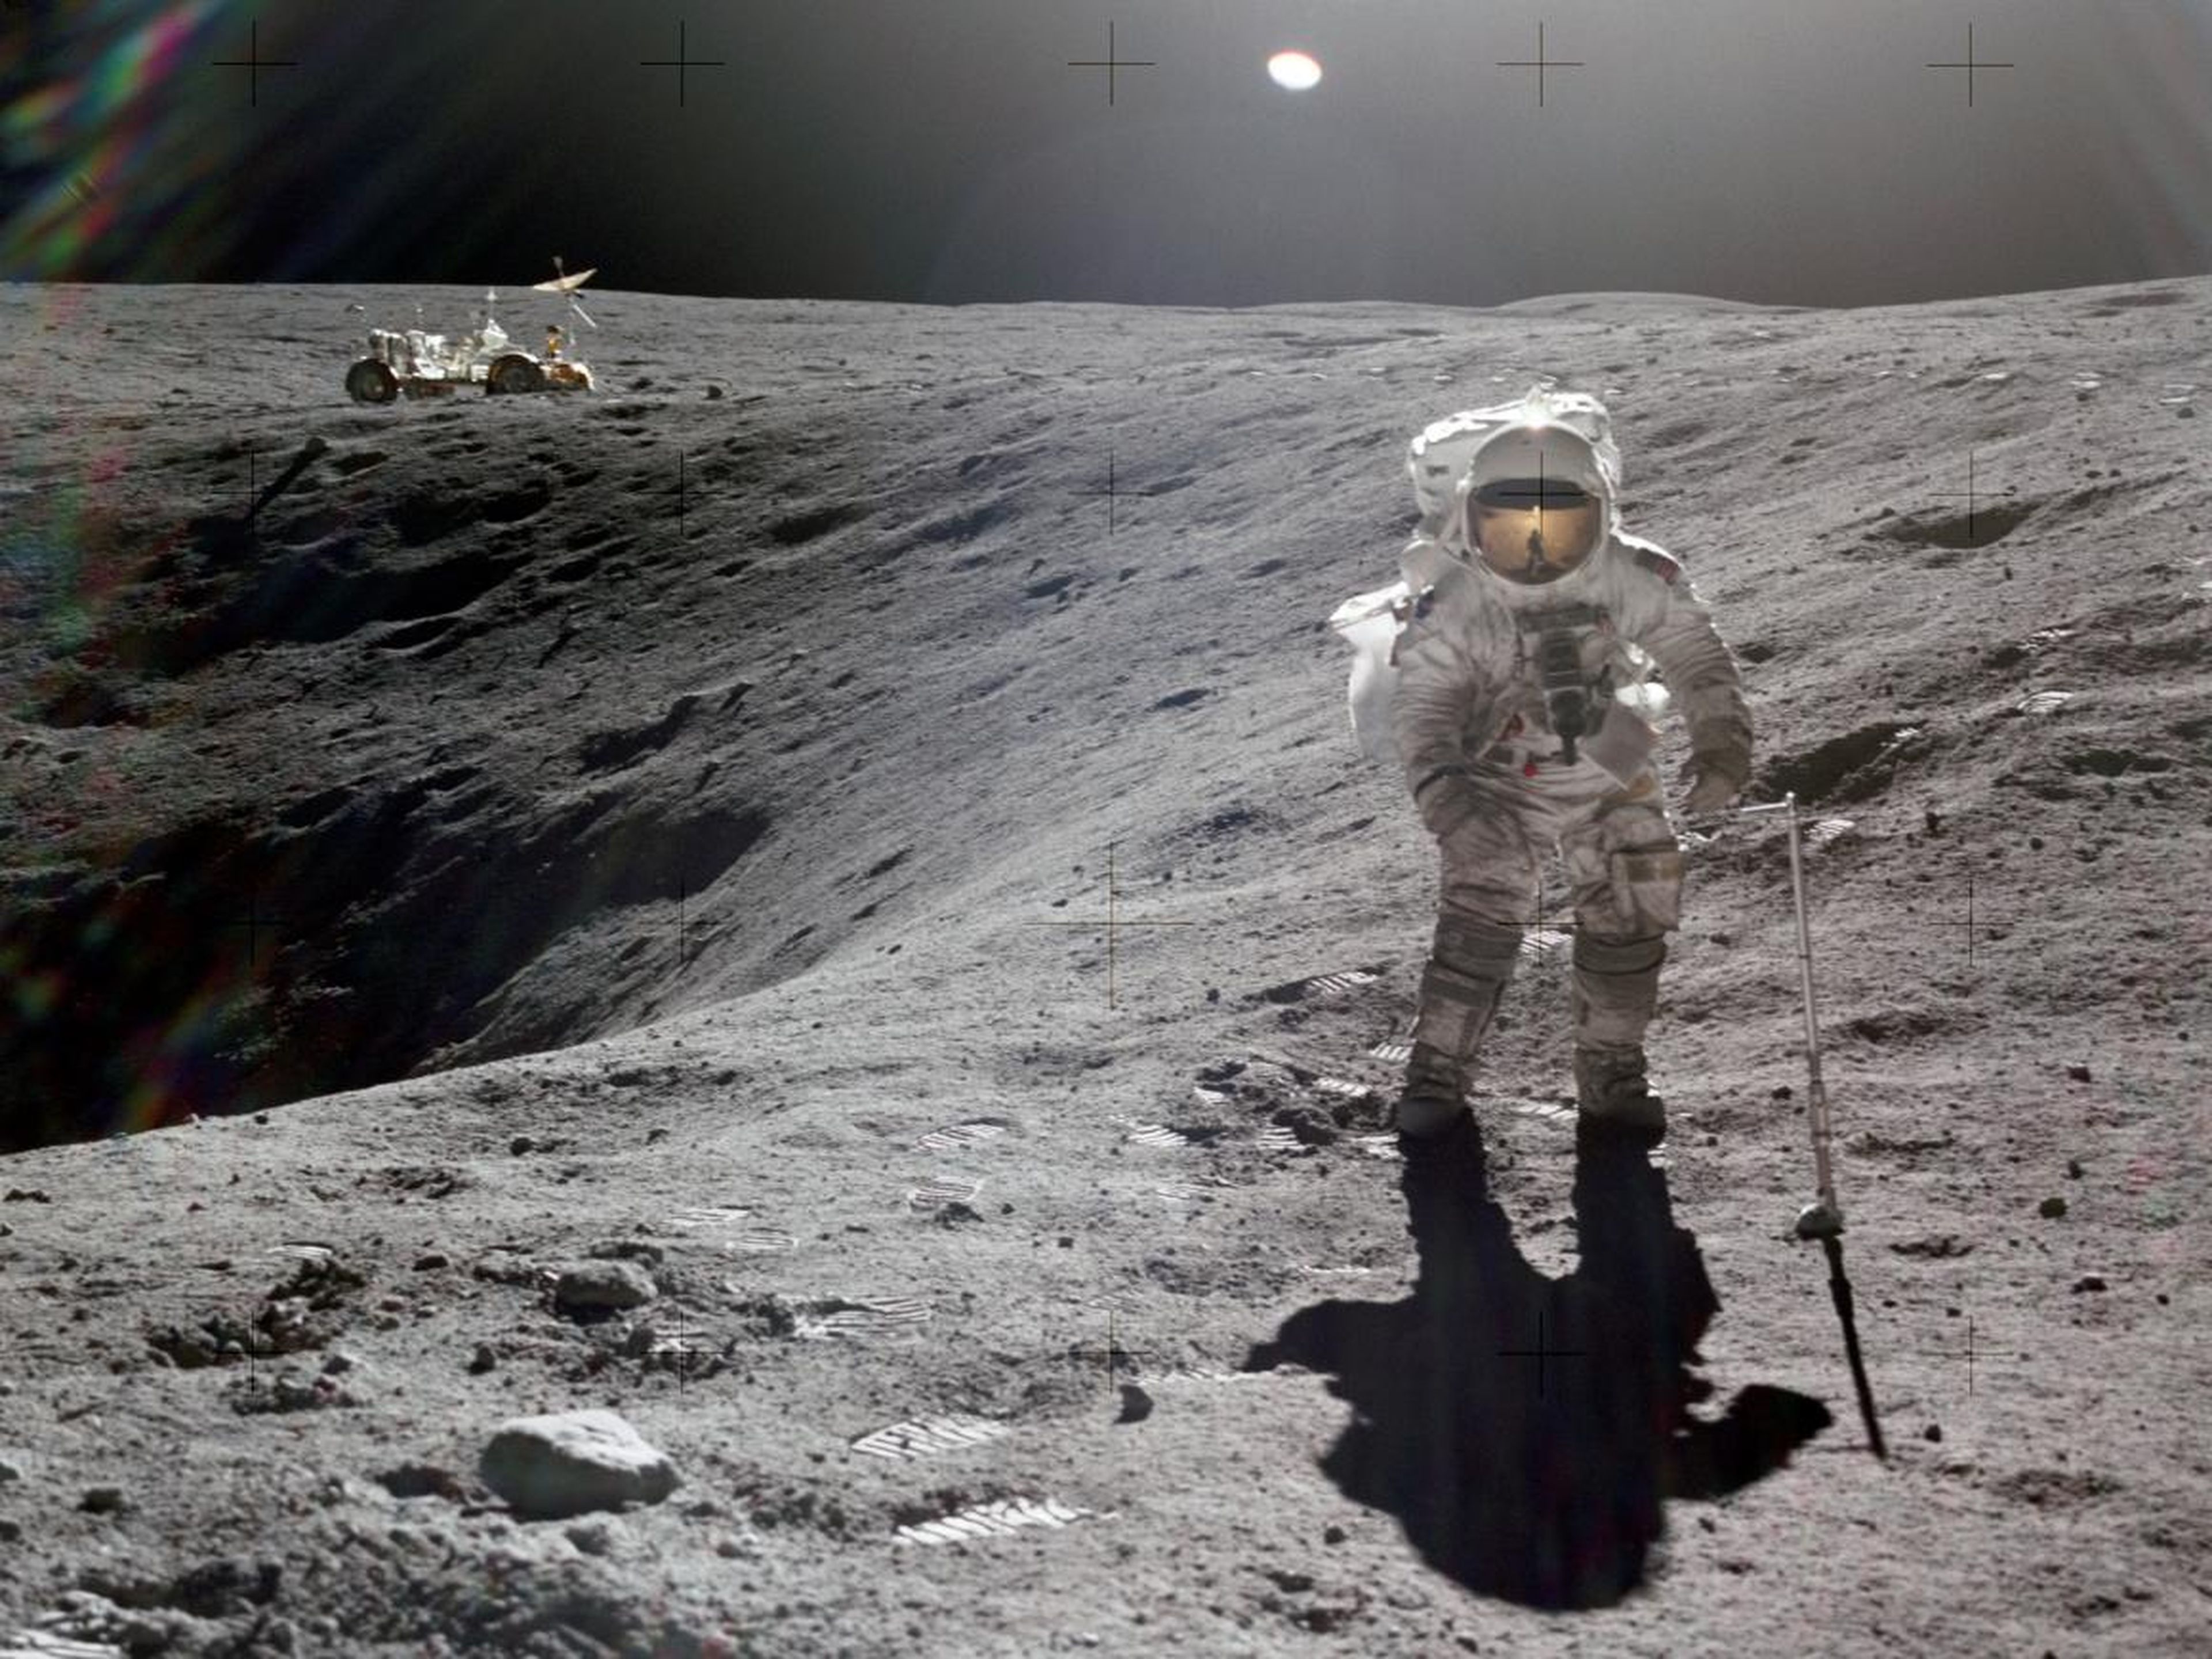 Charlie Duke posa junto al cráter Descartes de la Luna en 1972. Al fondo, un rover lunar.